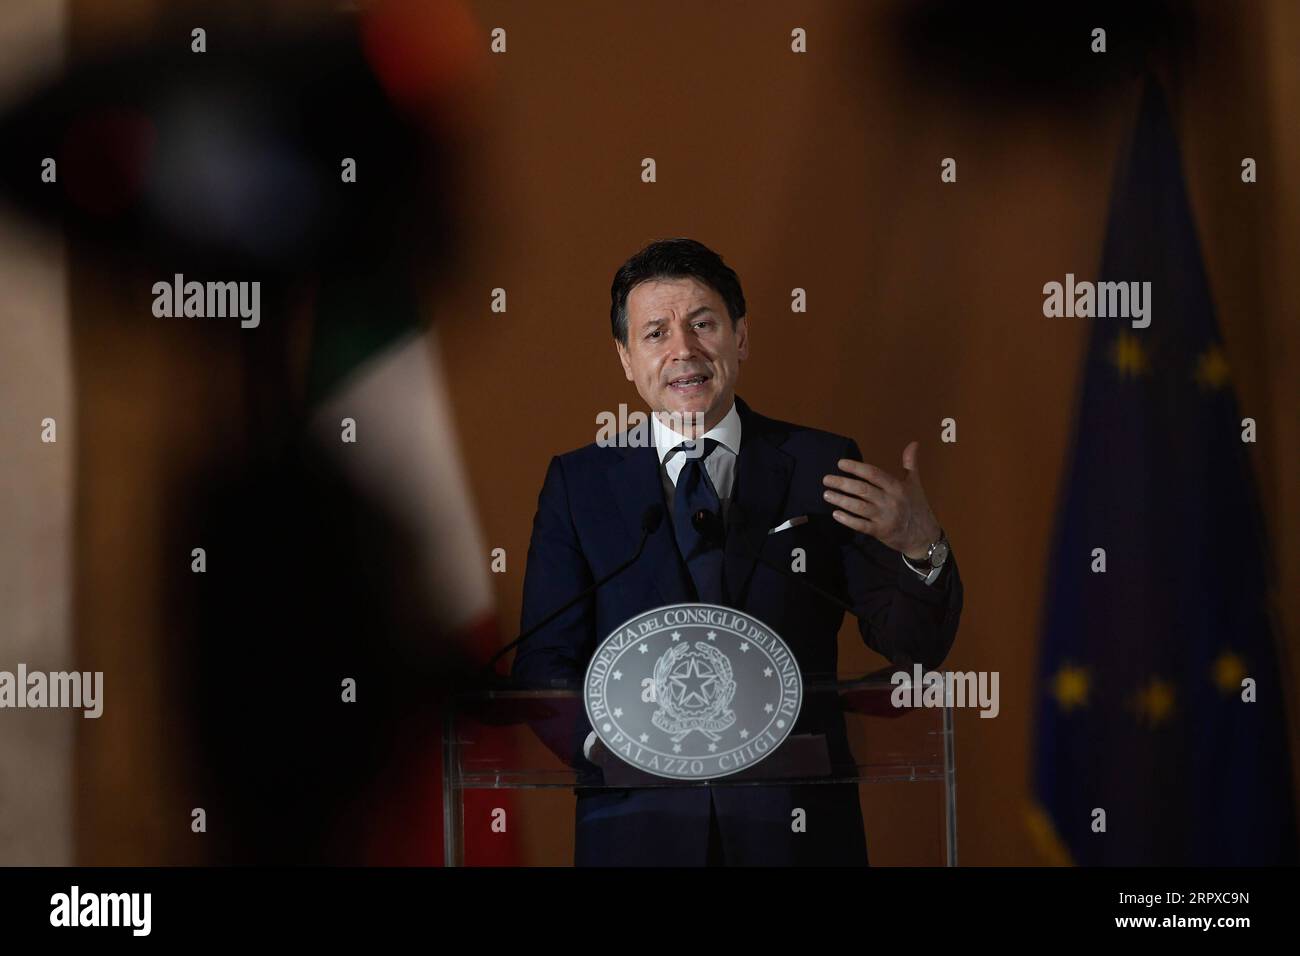 200517 -- ROM, 17. Mai 2020 -- der italienische Premierminister Giuseppe Conte spricht am 16. Mai 2020 auf einer Pressekonferenz in Rom. Die italienische Regierung hat erklärt, dass sie ab dem 3. Juni uneingeschränkte Reisen zwischen Italien und anderen Schengen-Ländern sowie innerhalb Italiens selbst zulassen wird. ITALIEN-ROM-PM-COVID-19-PRESSEKONFERENZ XINHUA PUBLICATIONXNOTXINXCHN Stockfoto